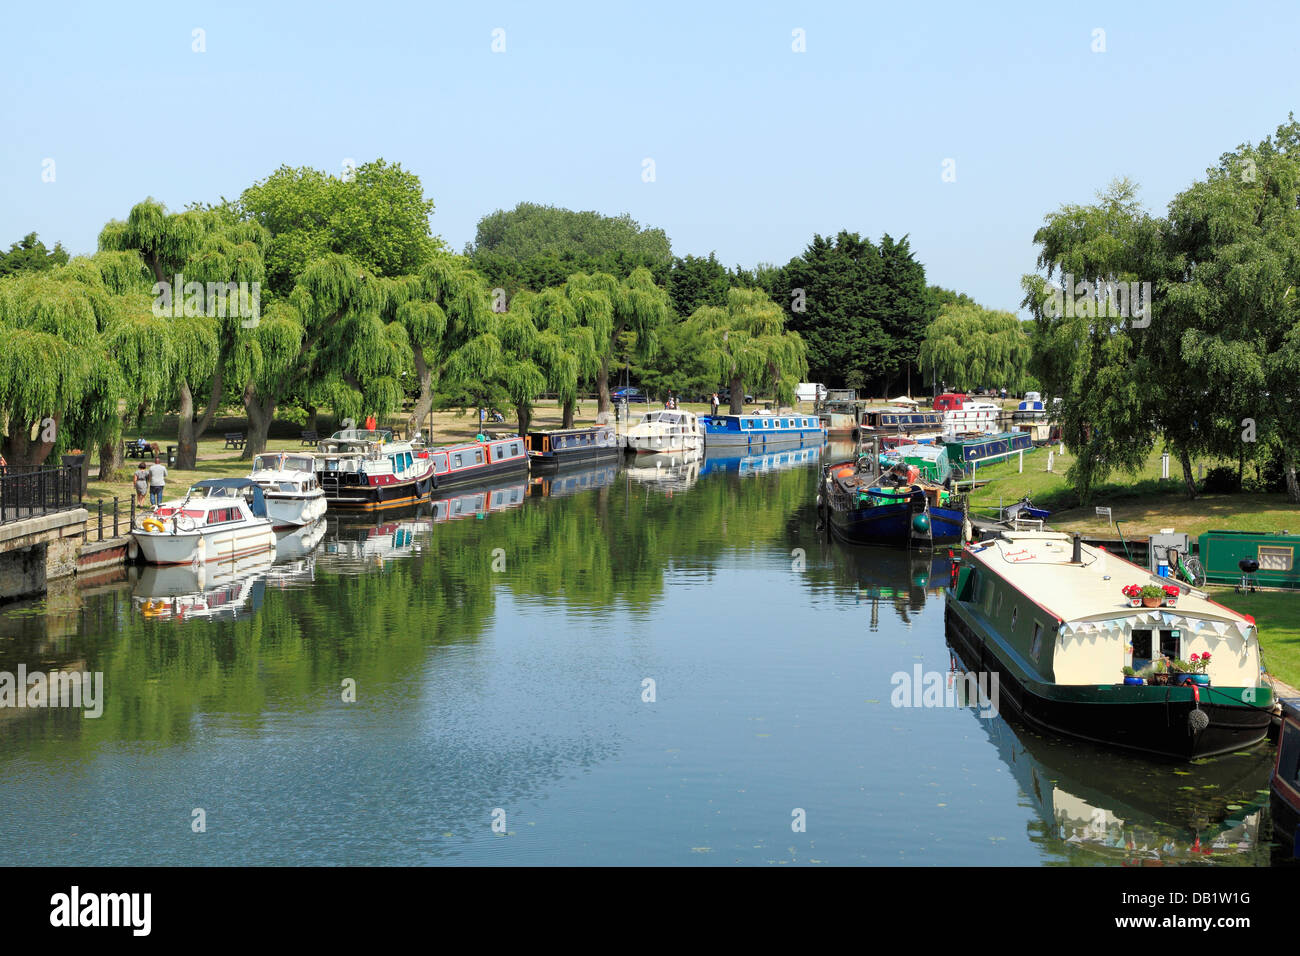 Ely, Fluss Ouse, Kähne und Boote, englische Flüsse am Flussufer Kneipen Gaststätten Pub, Cambridgeshire England UK Stockfoto